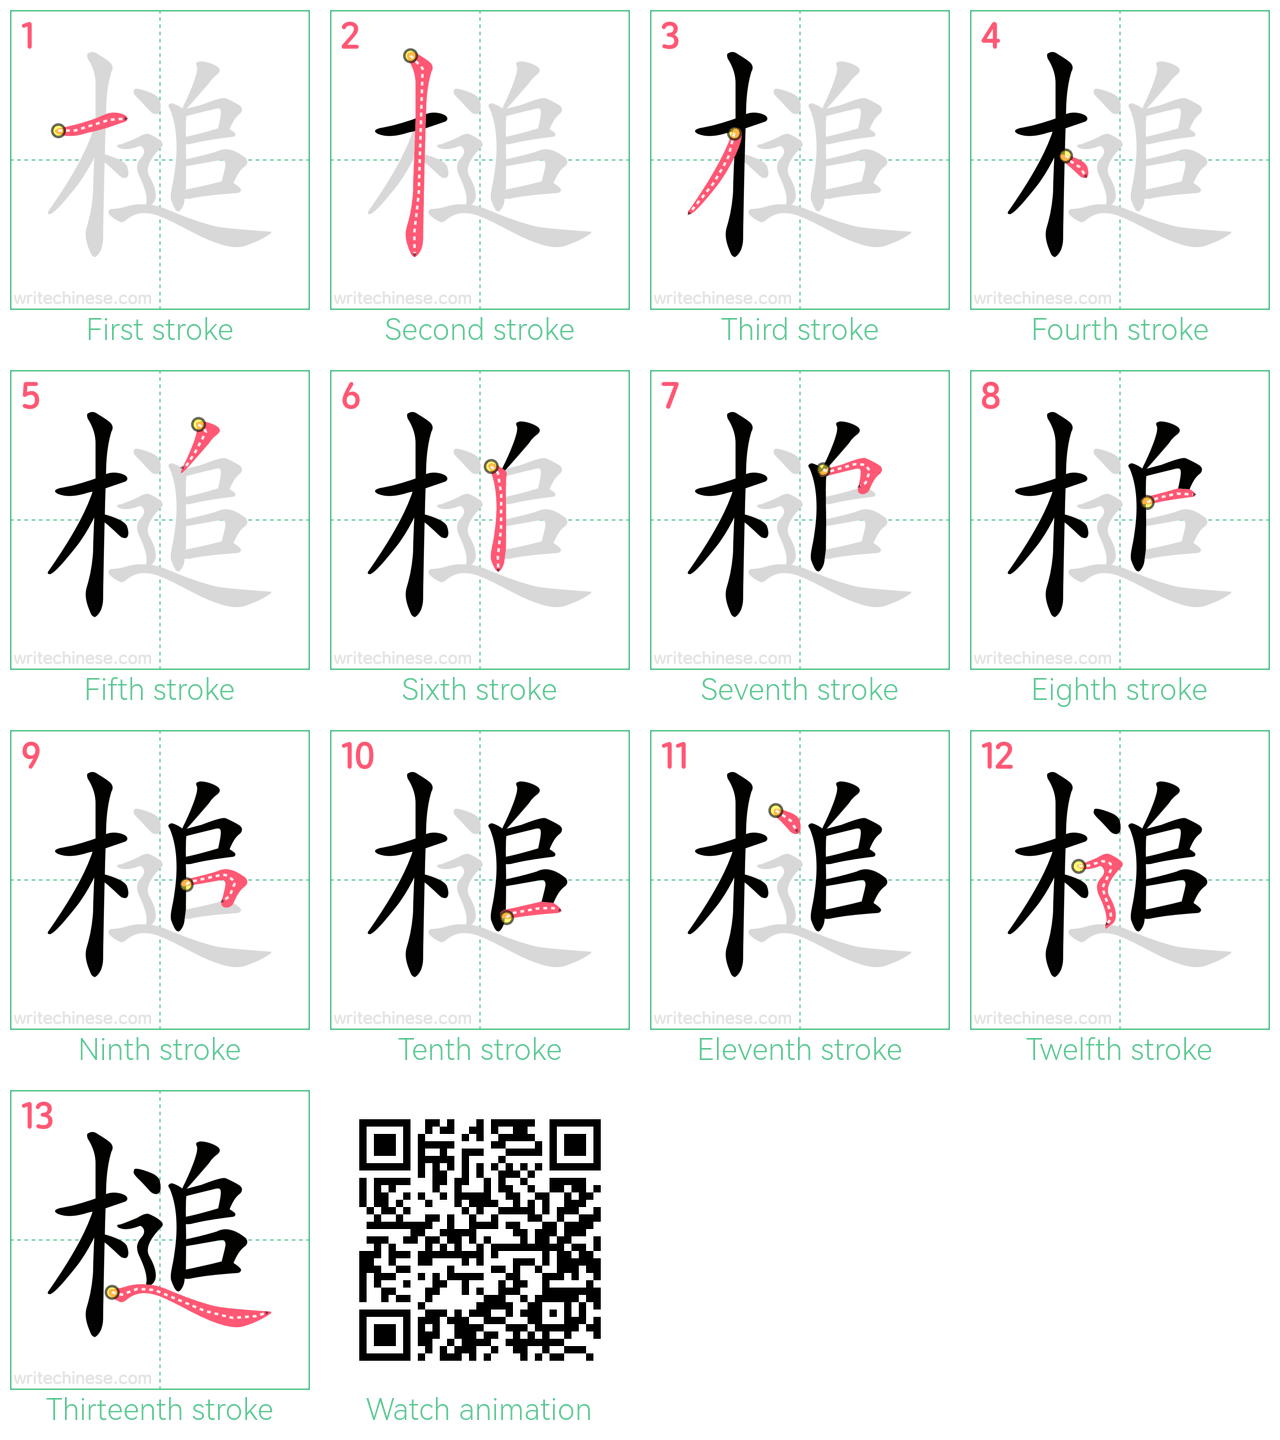 槌 step-by-step stroke order diagrams